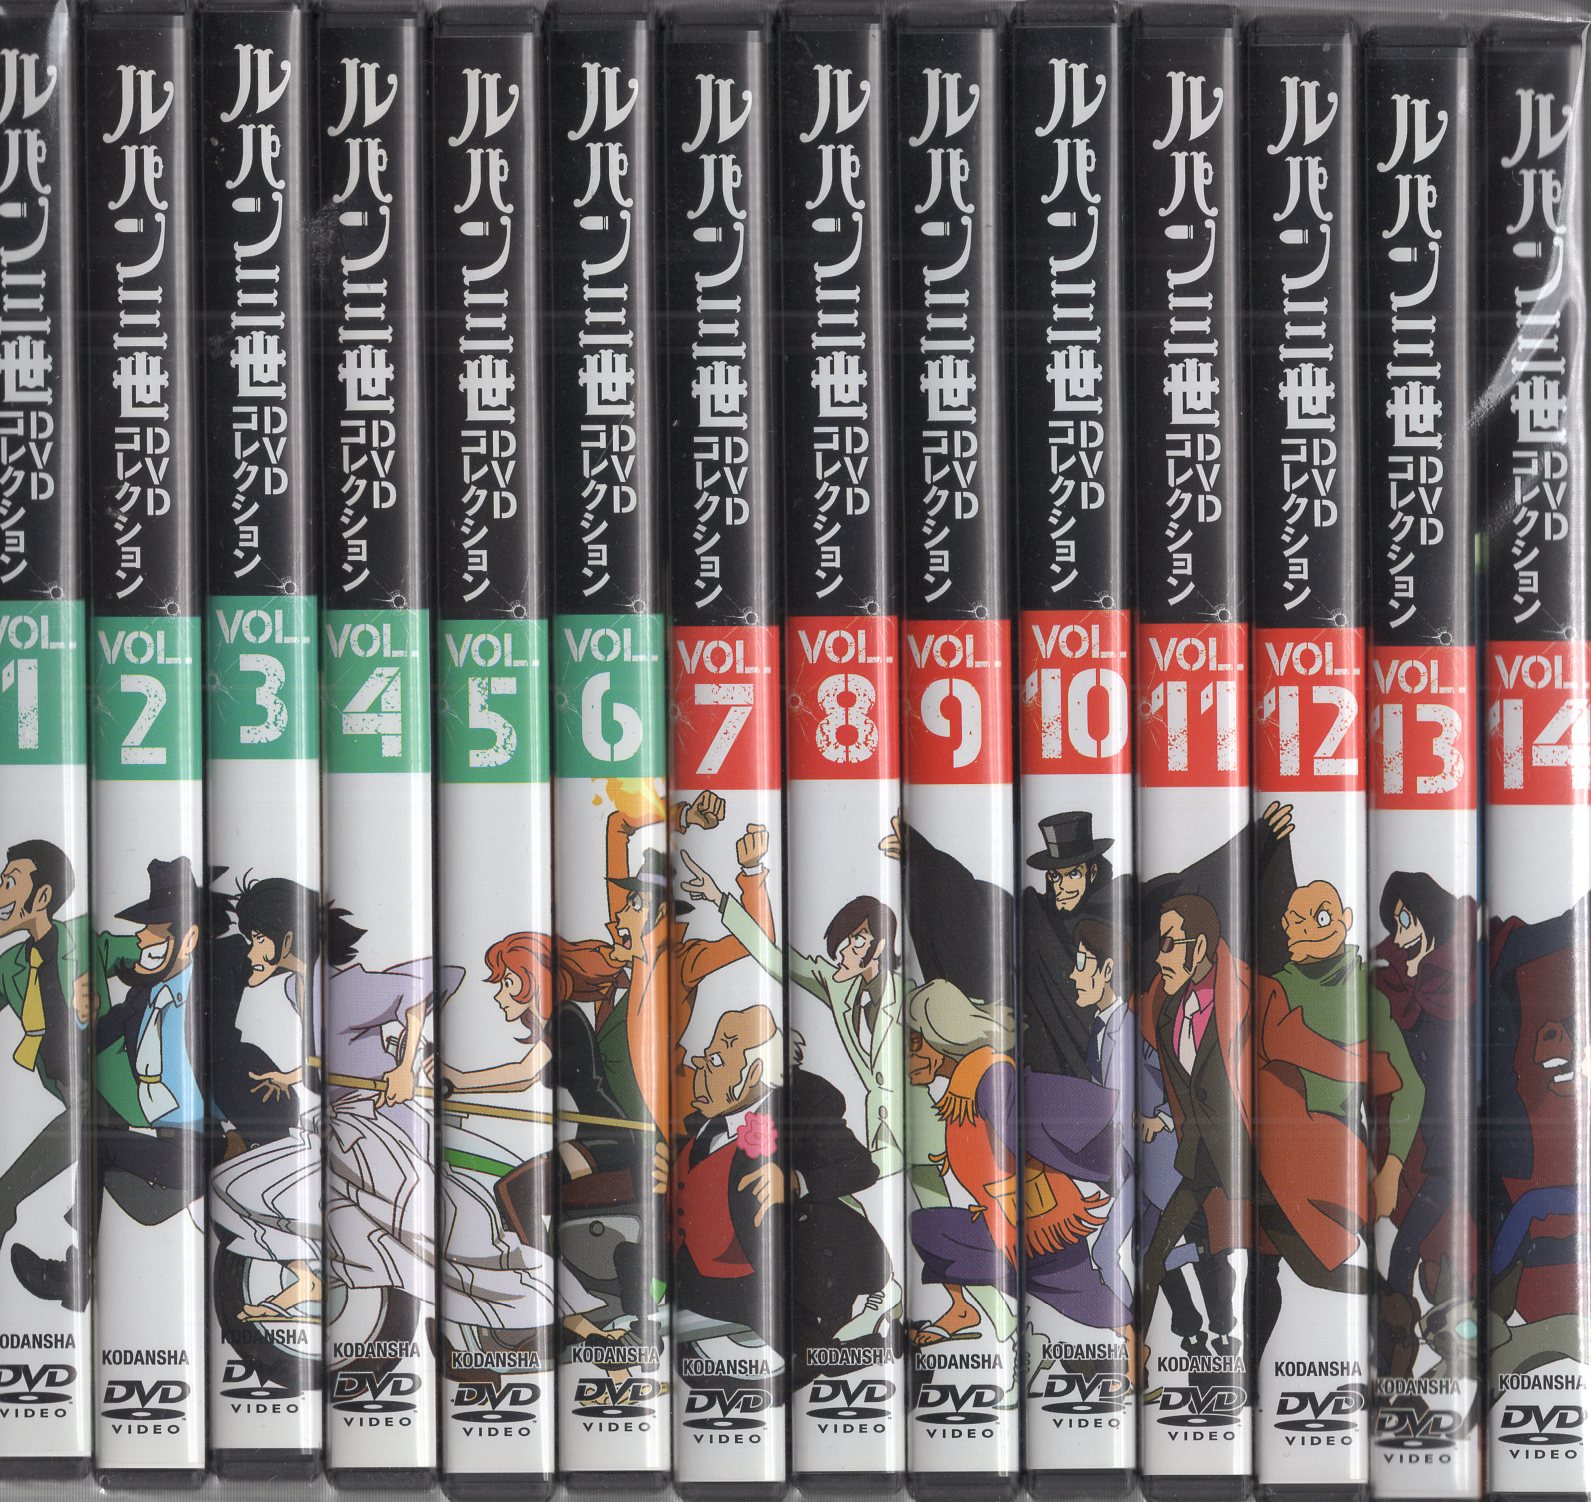 ルパン三世 DVD コレクション 全57巻セット - 全巻セット